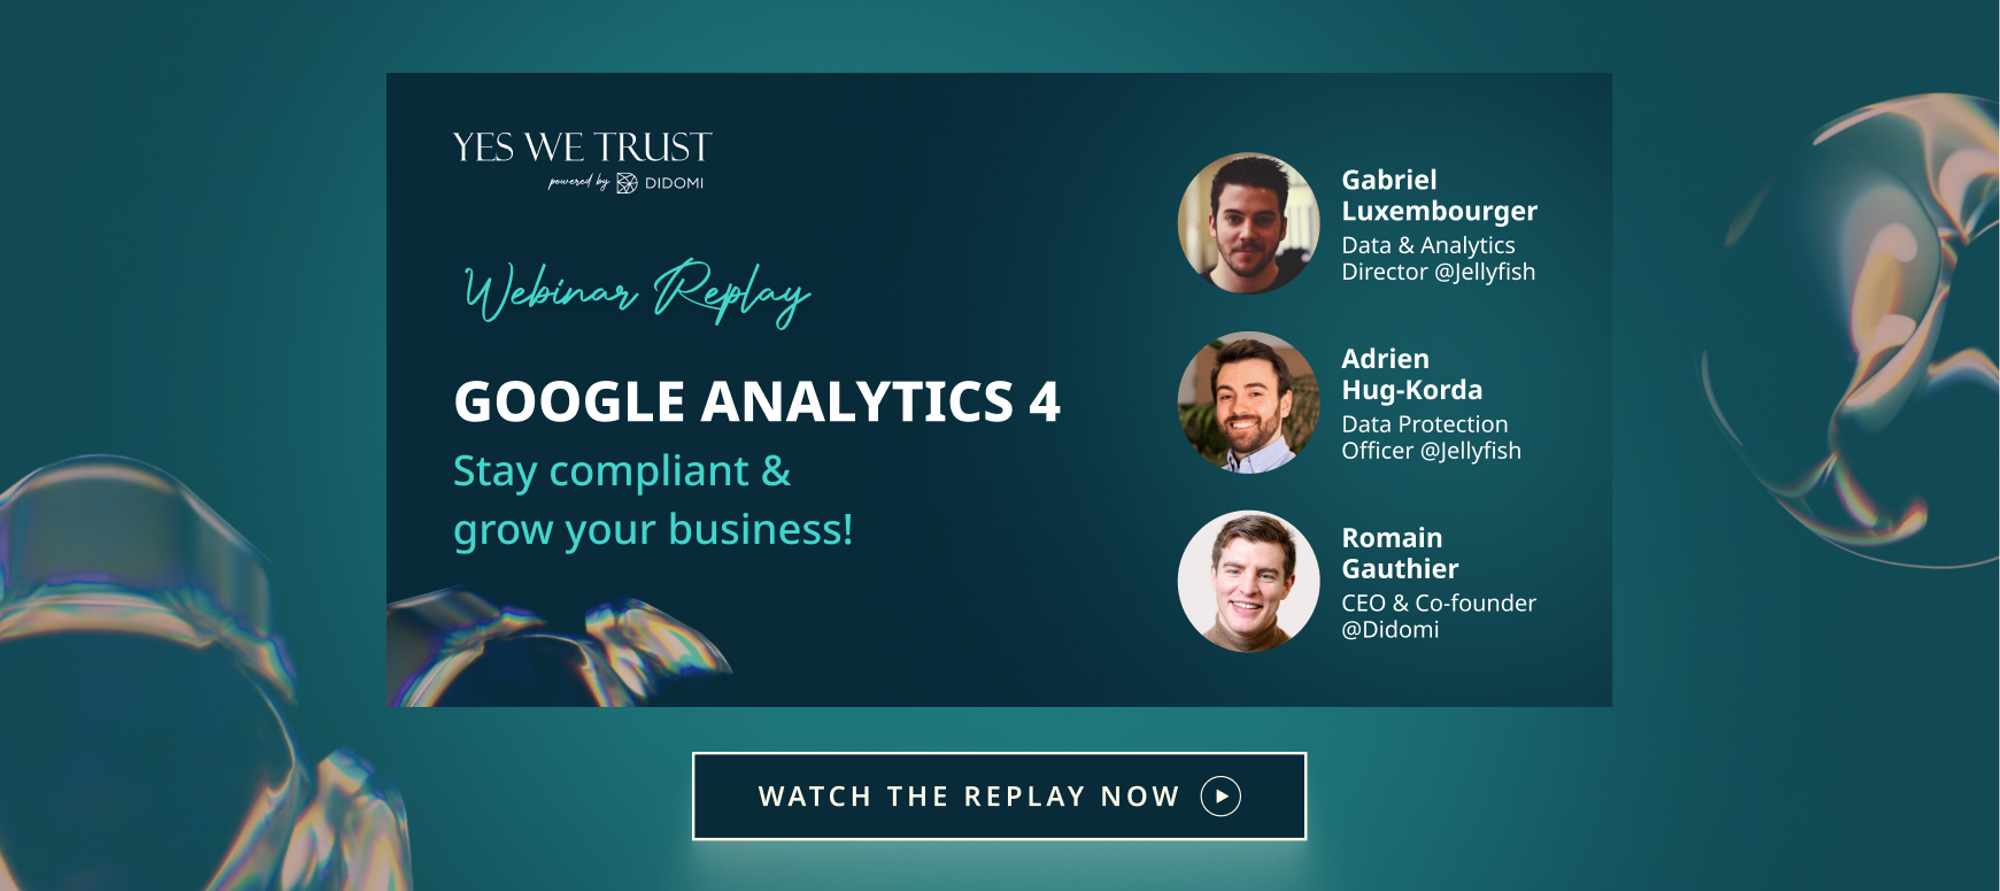 Yes We Trust - Google Analytics 4 Webinar Replay